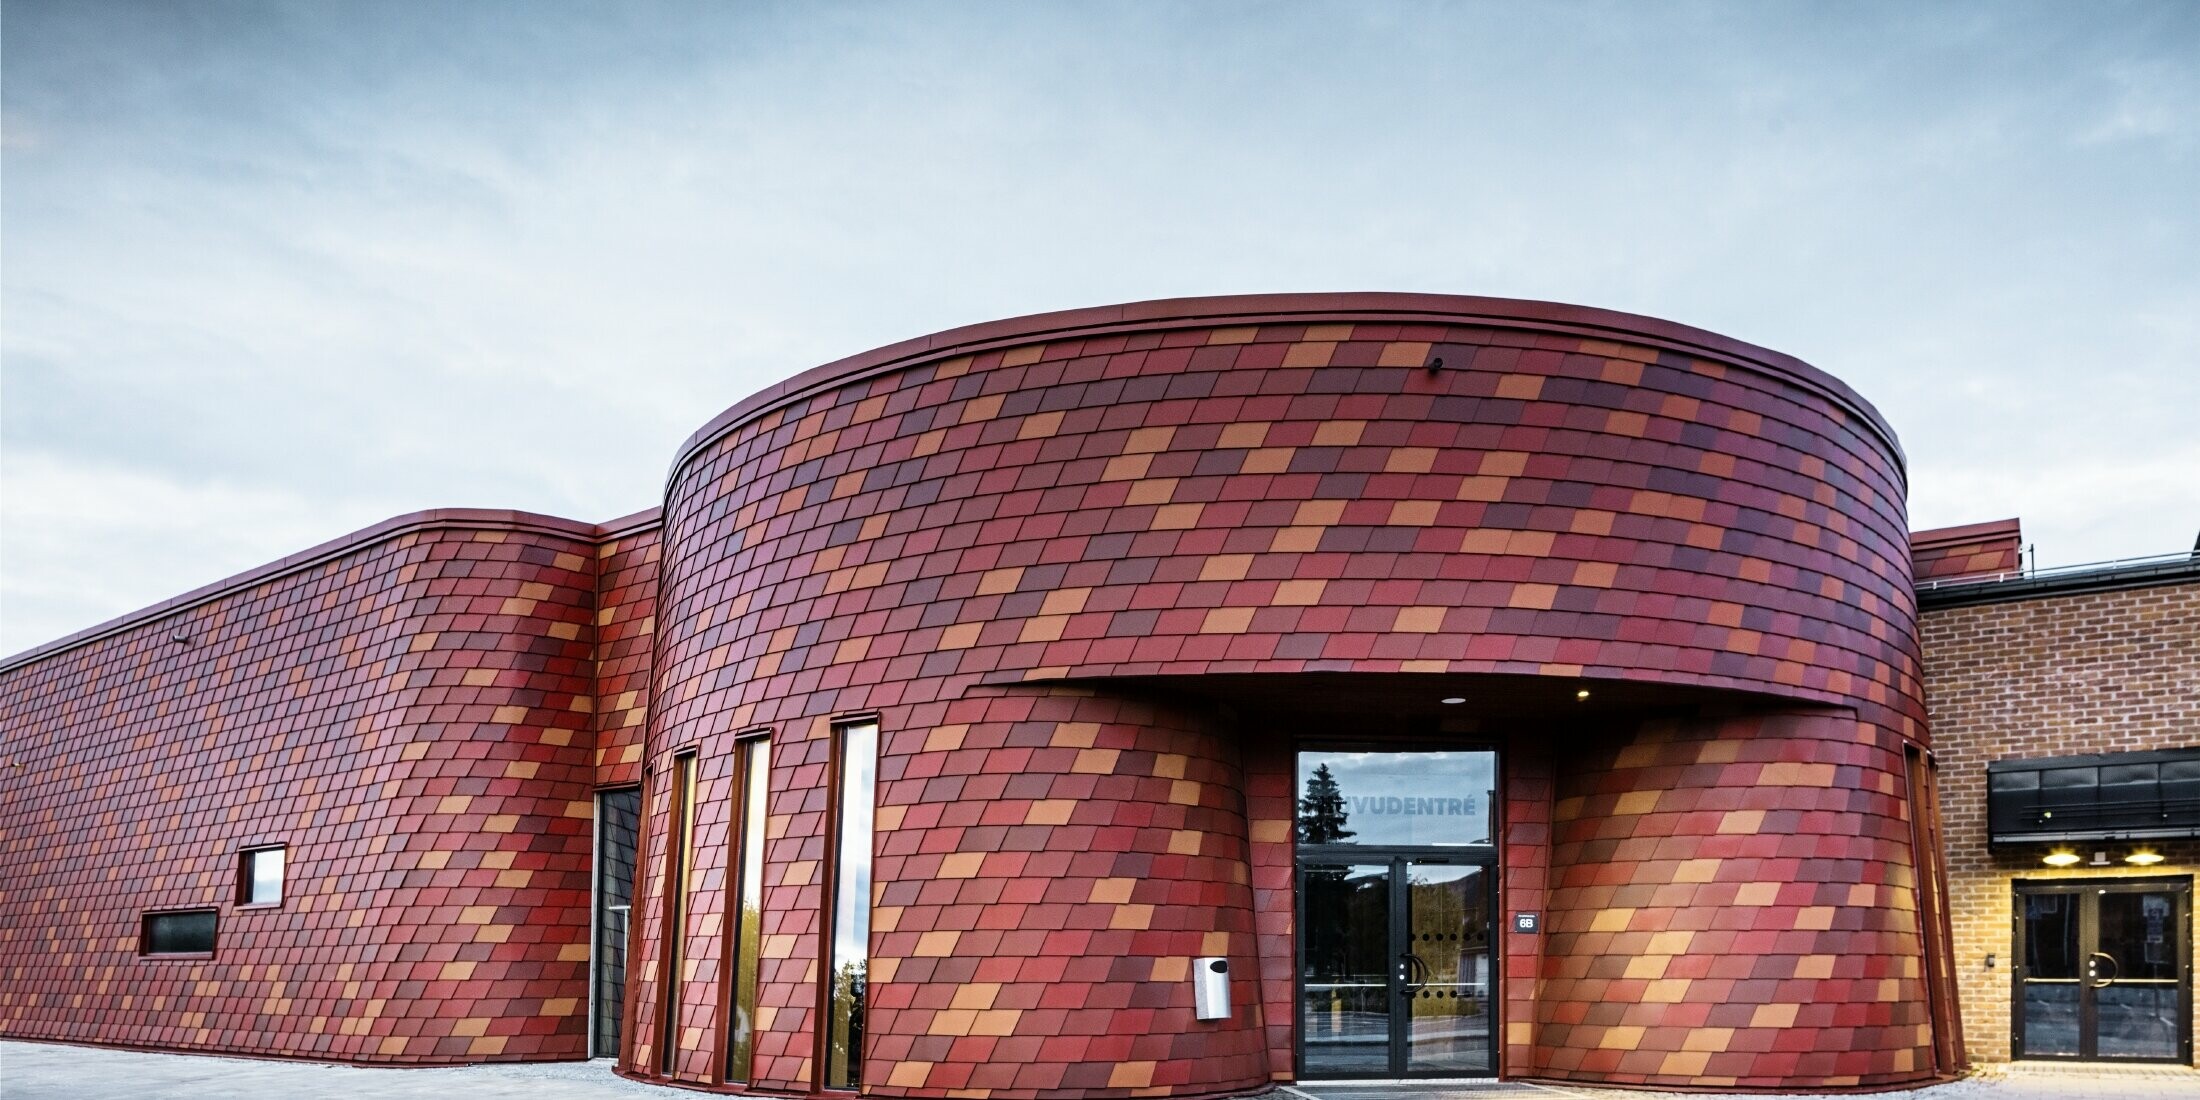 Patinoire à toit plat et façade incurvée ; la façade est revêtue de bardeaux de façade en aluminium de PREFA dans différentes nuances de rouge - rouge oxyde, rouge tuile, brun rouge, rouge brun